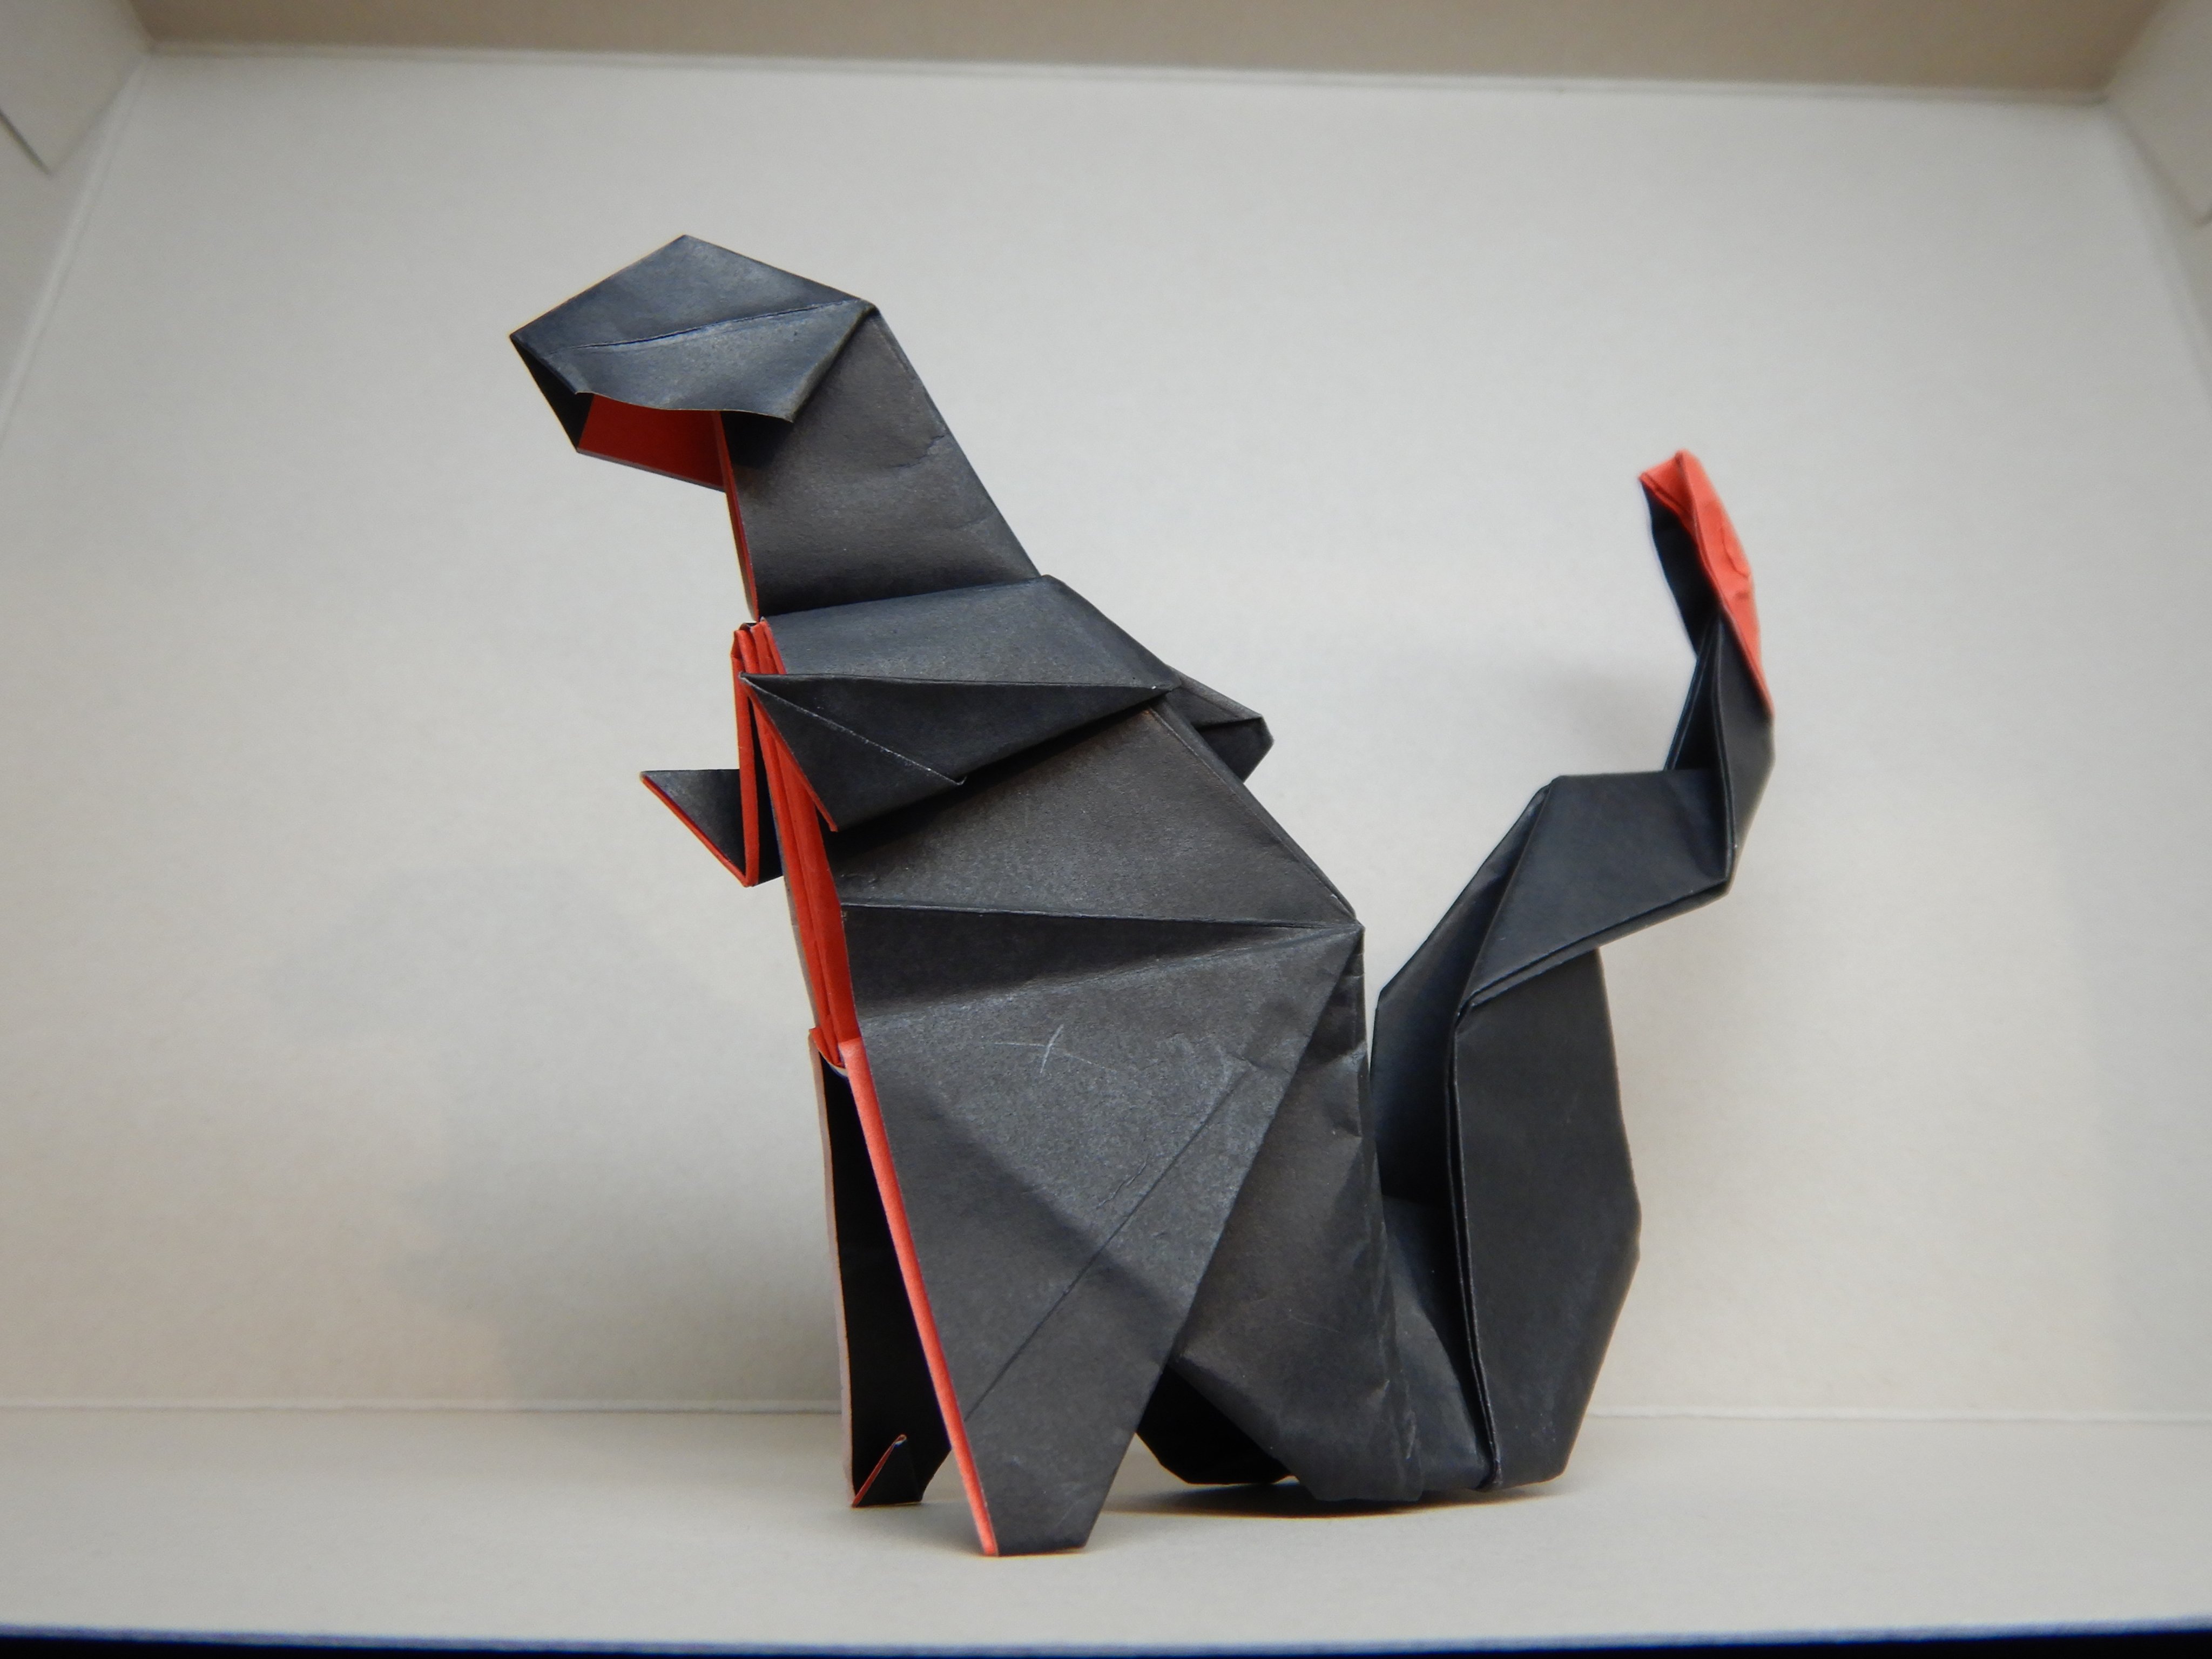 猫怪獣ノラ シン ゴジラ 折り紙 折り紙のゴジラ16の折り方を 作ってみました 正方形の紙1枚を使用します ハサミやのりは不要です 1 2 ゴジラ Godzilla 折り紙 Origami T Co Tj0okawzpo Twitter